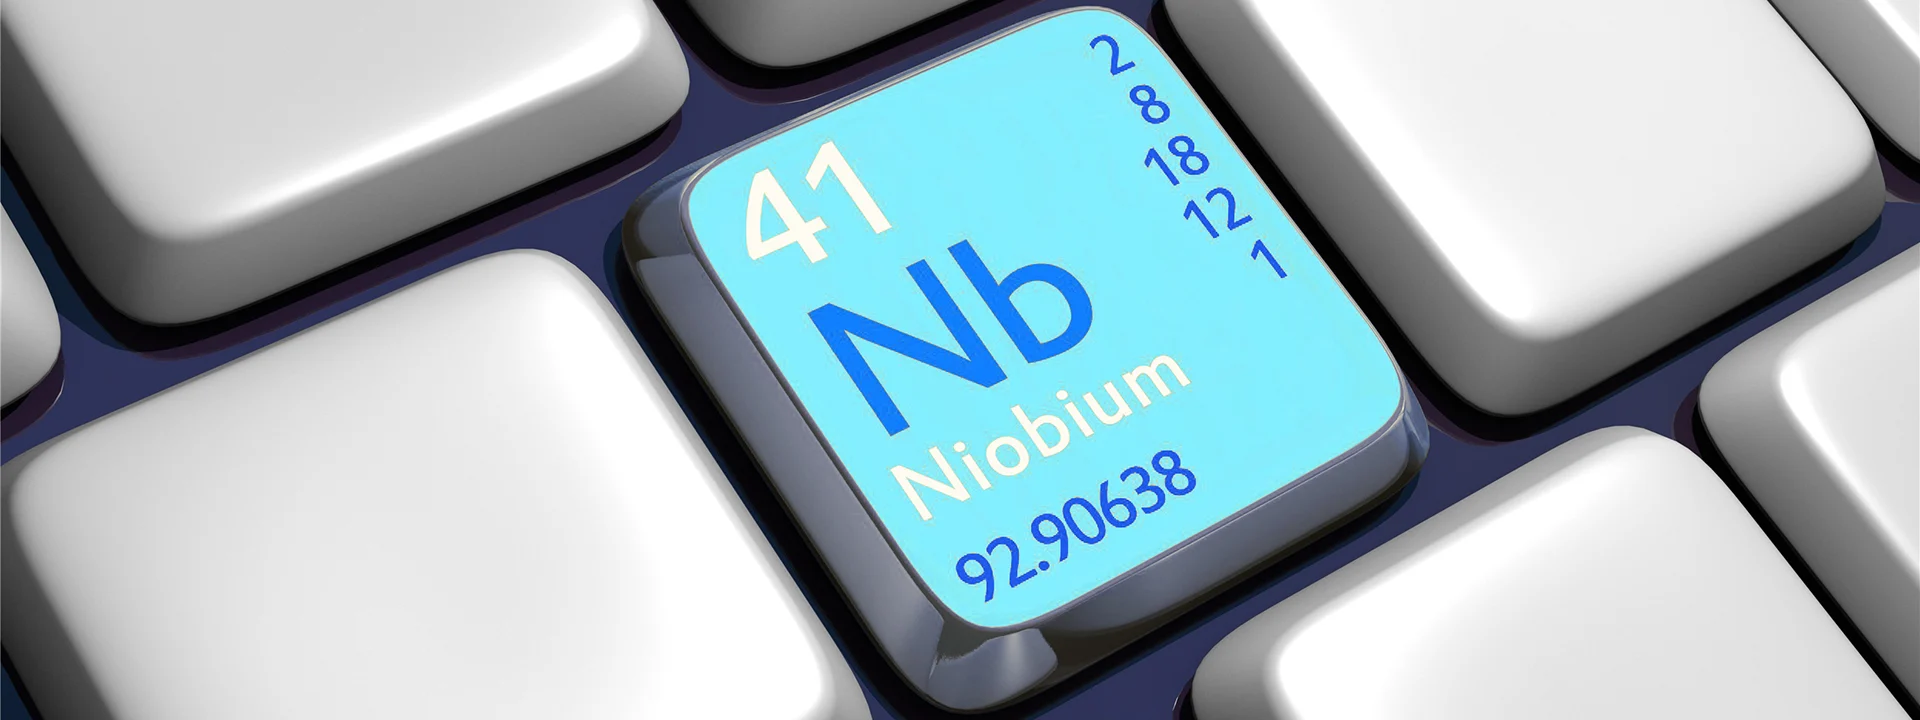 Niobium alloy